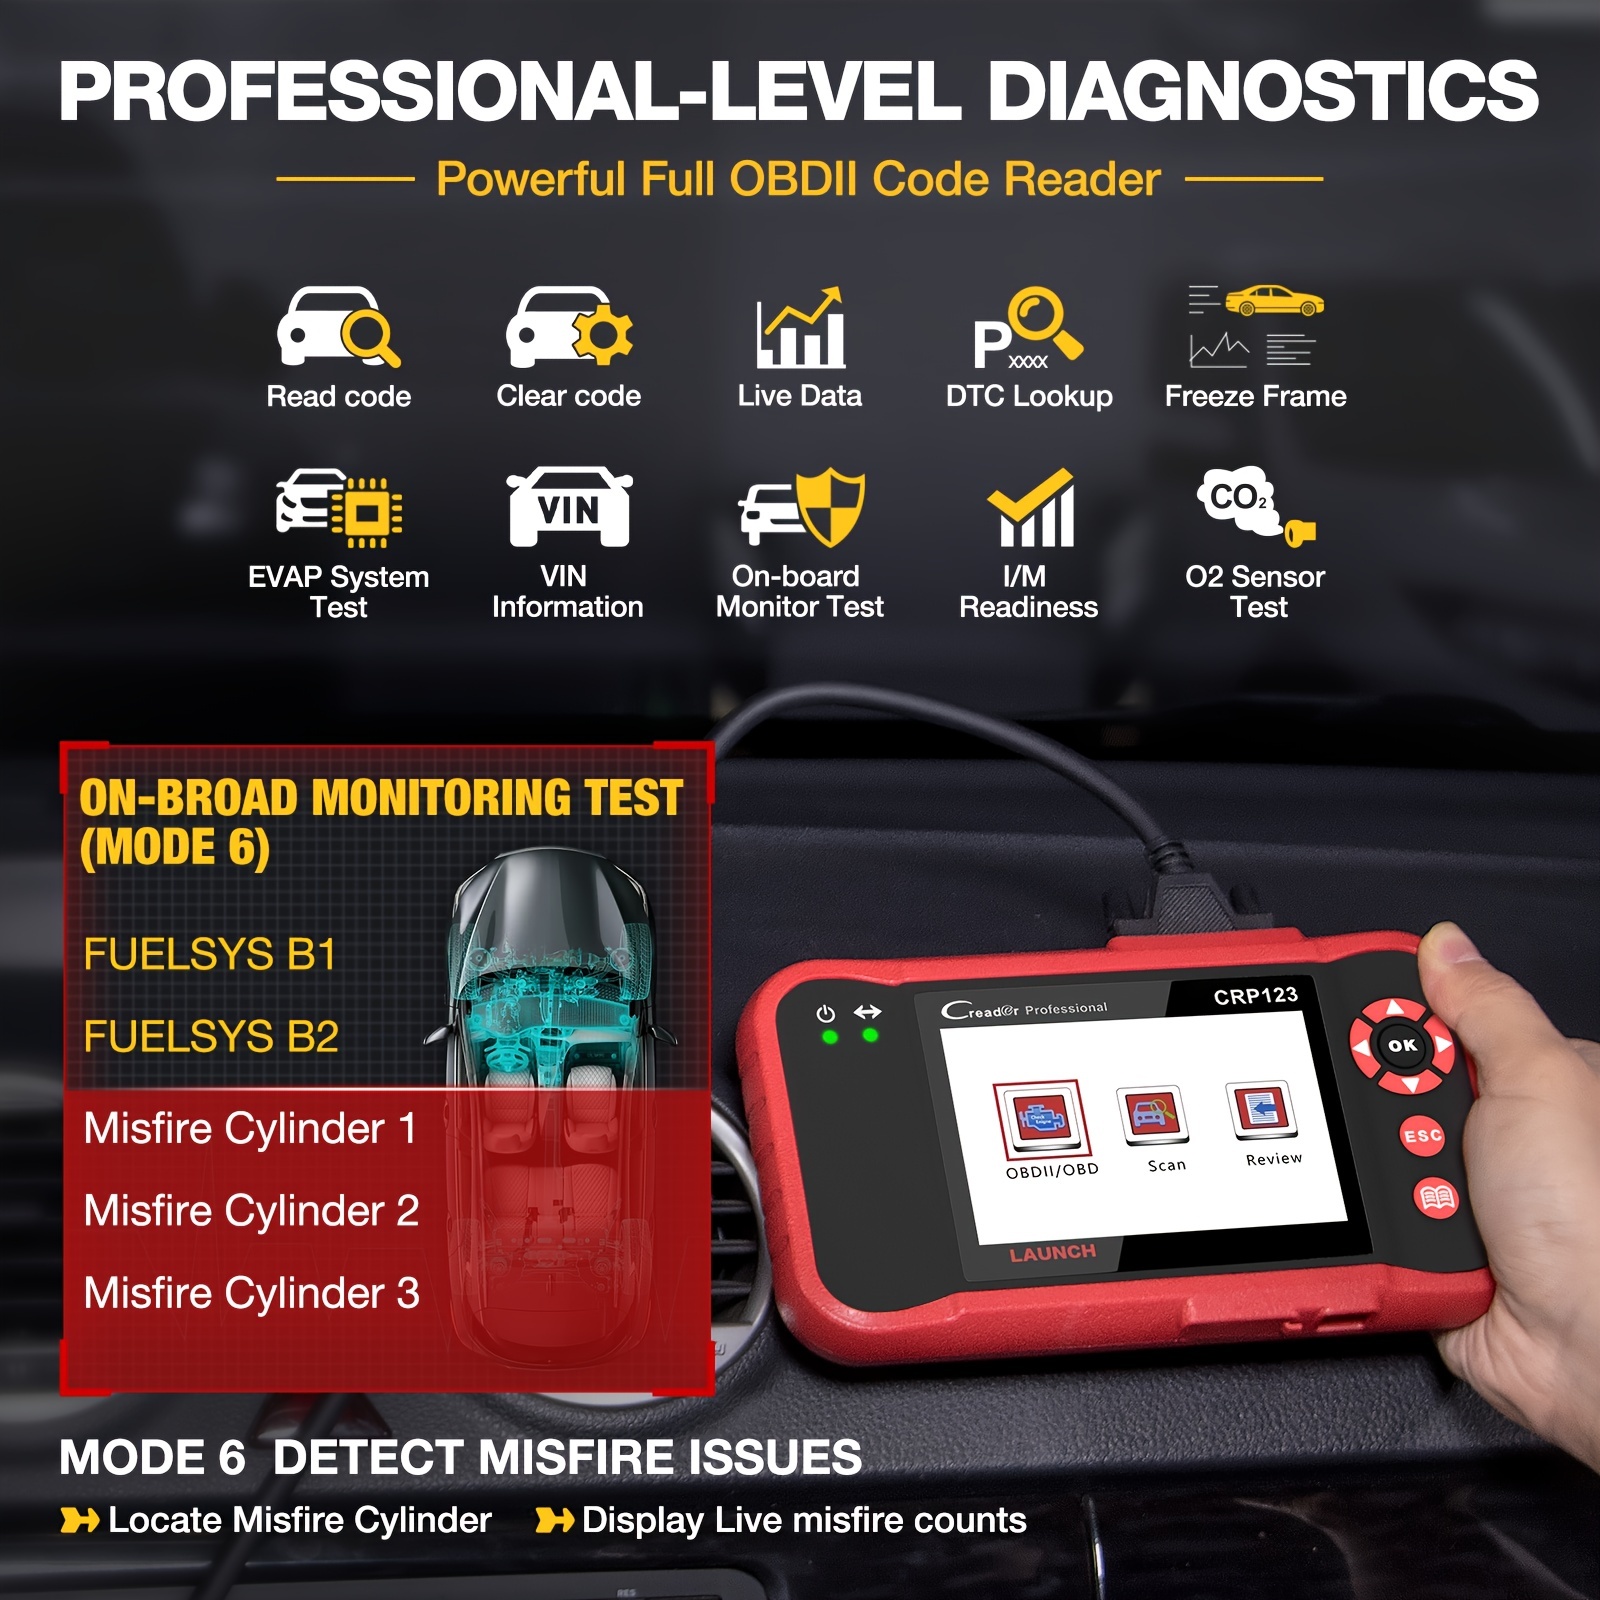 LAUNCH X431 CRP123X Elite OBD2 Car Diagnostic Tool Code